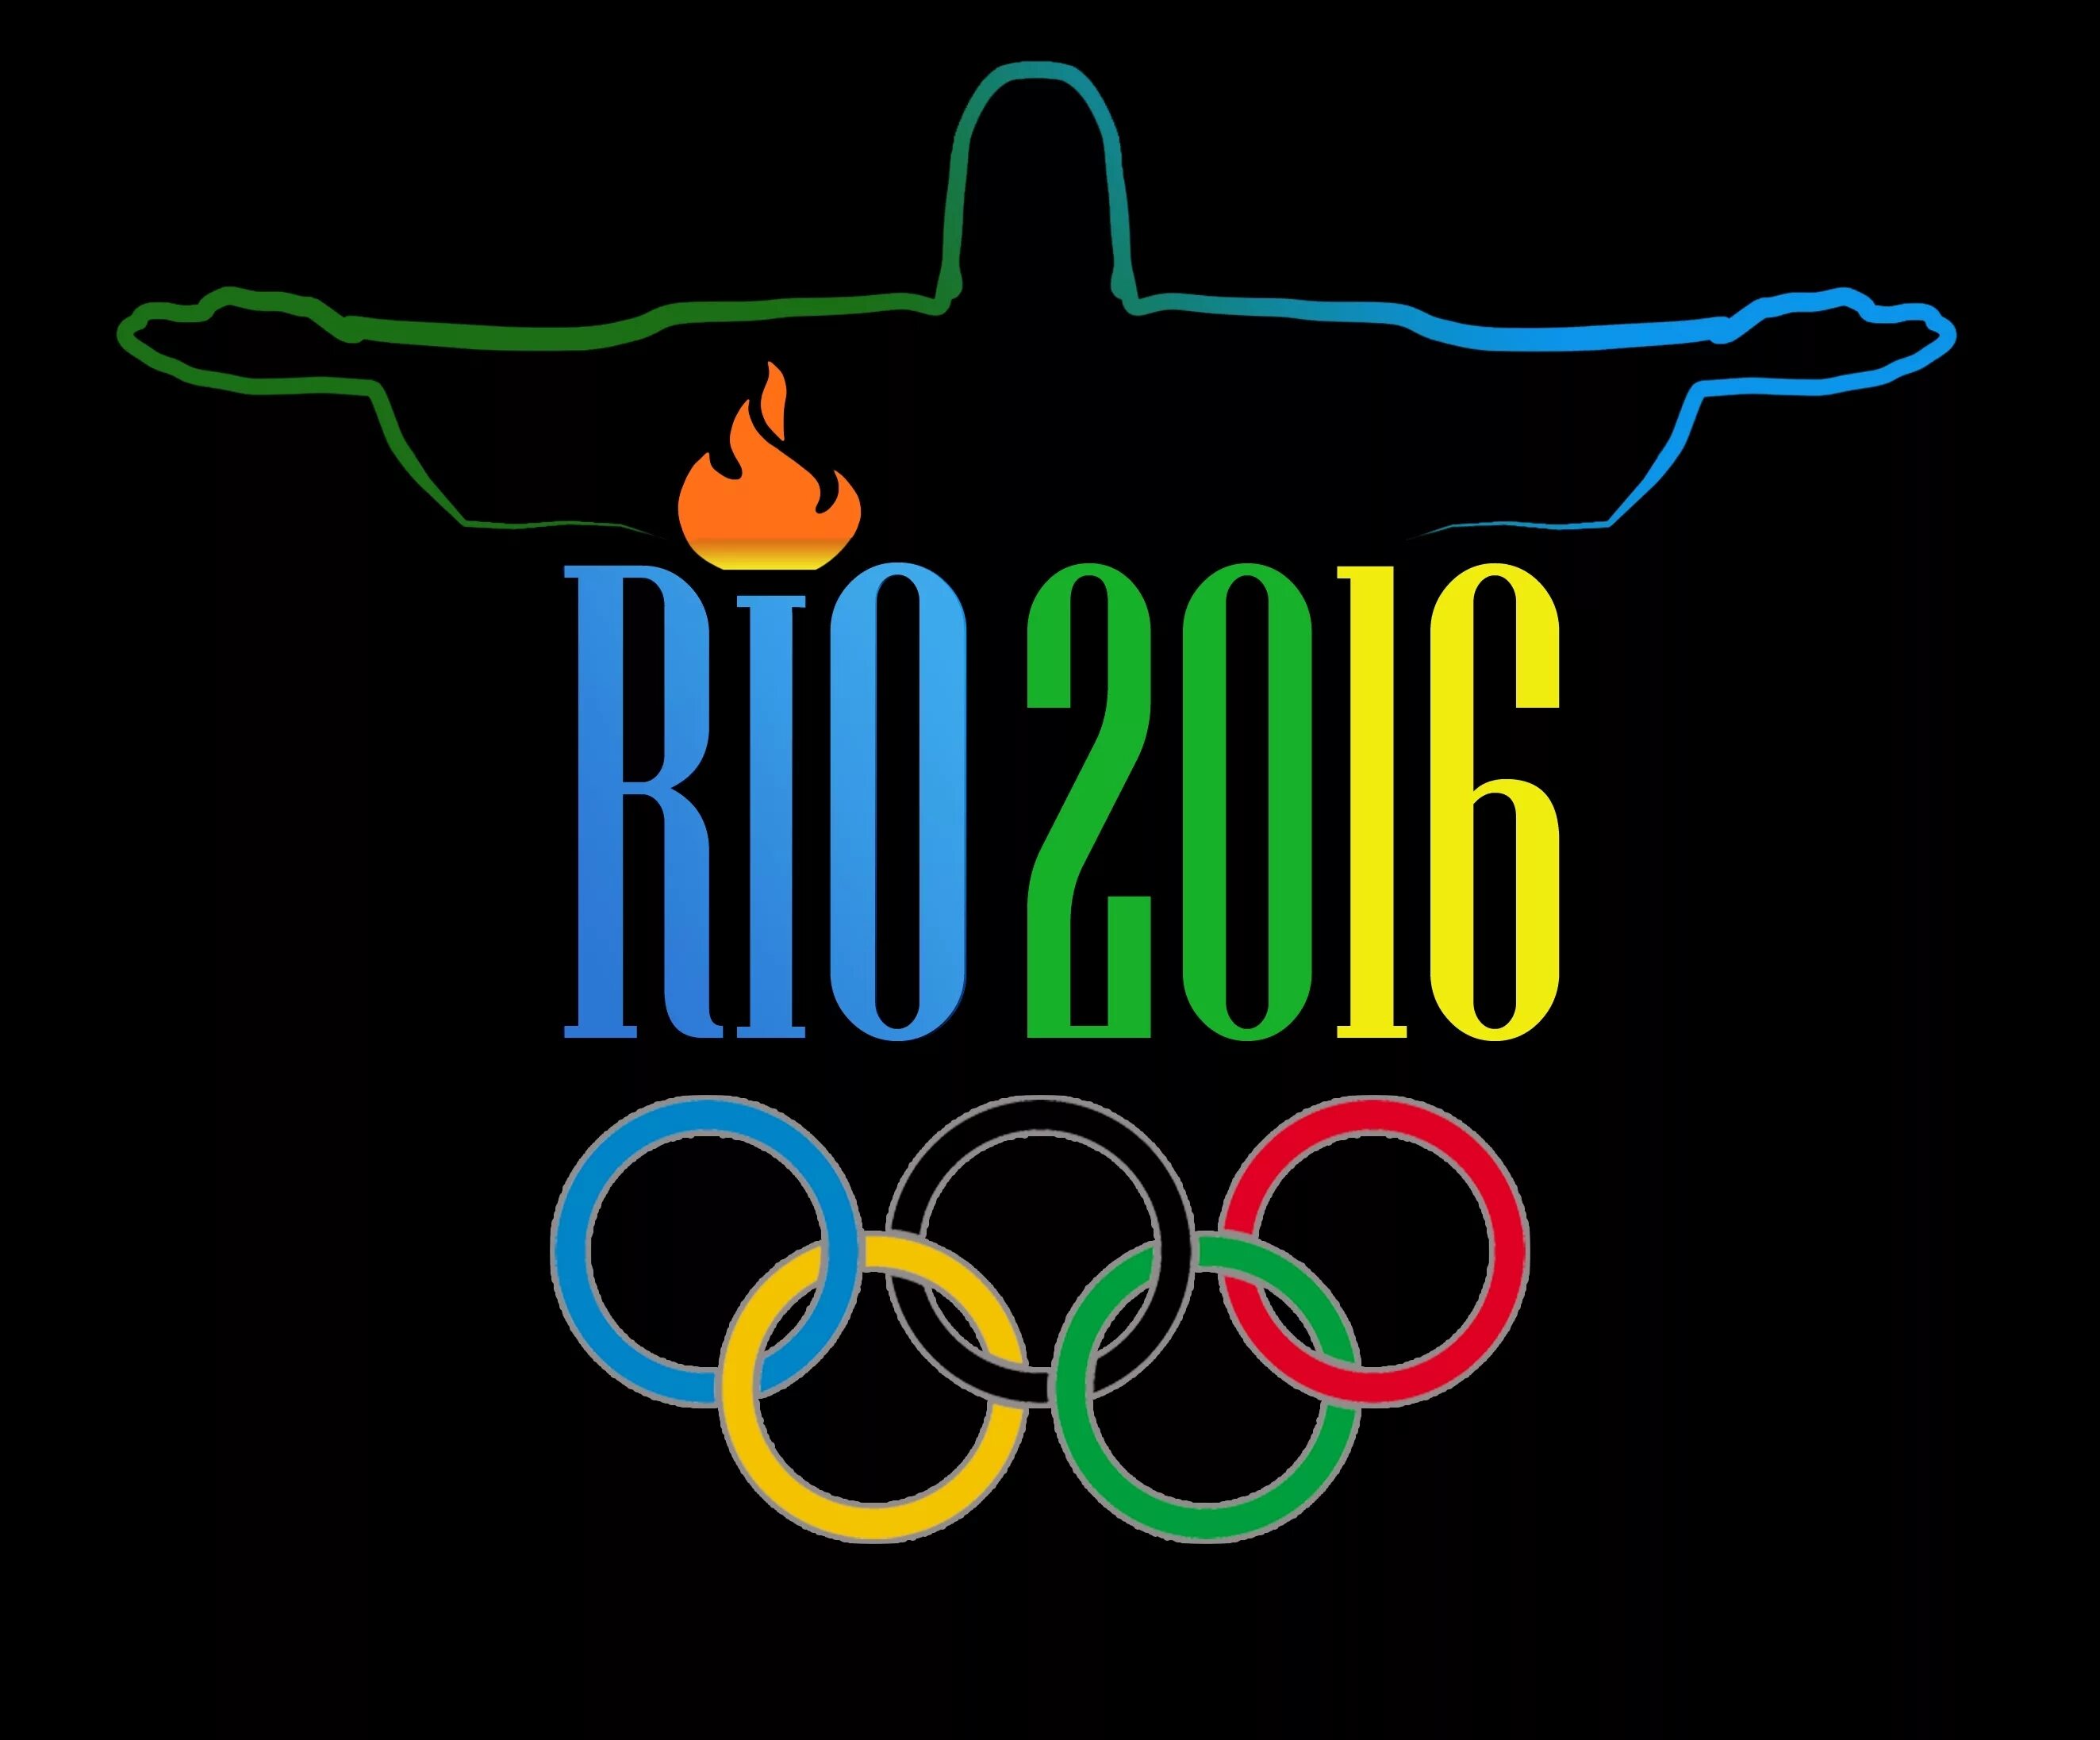 Логотип Олимпийских игр 2016 в Рио. Рио де Жанейро Олимпийские игры эмблема. Летние Олимпийские игры 2016 логотип. Олимпийские игры в Рио де Жанейро 2016.